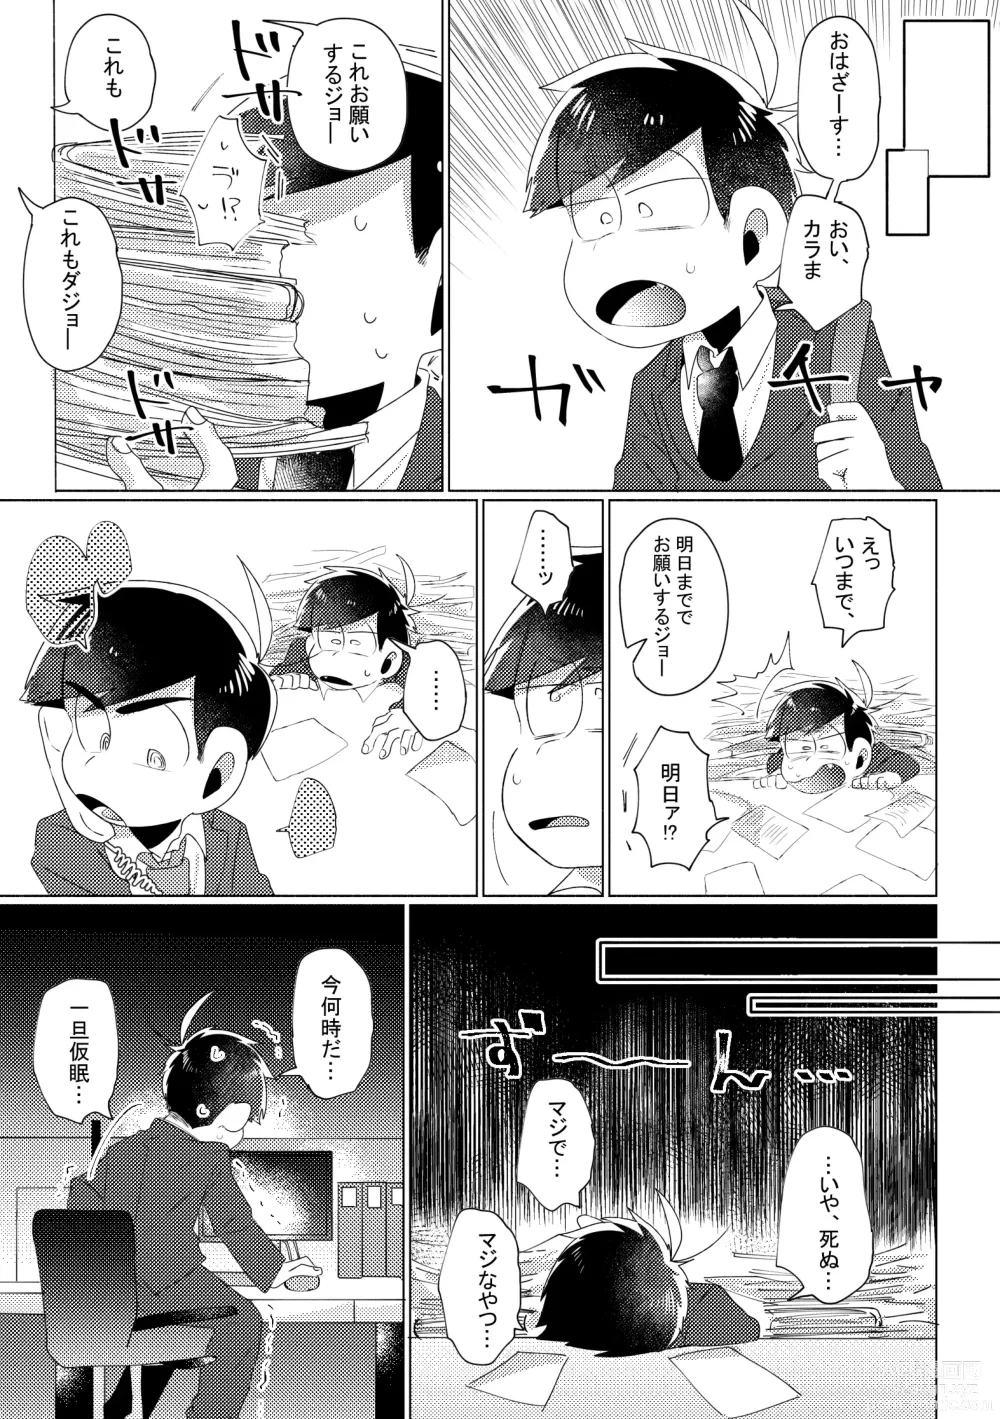 Page 42 of doujinshi Aperitif